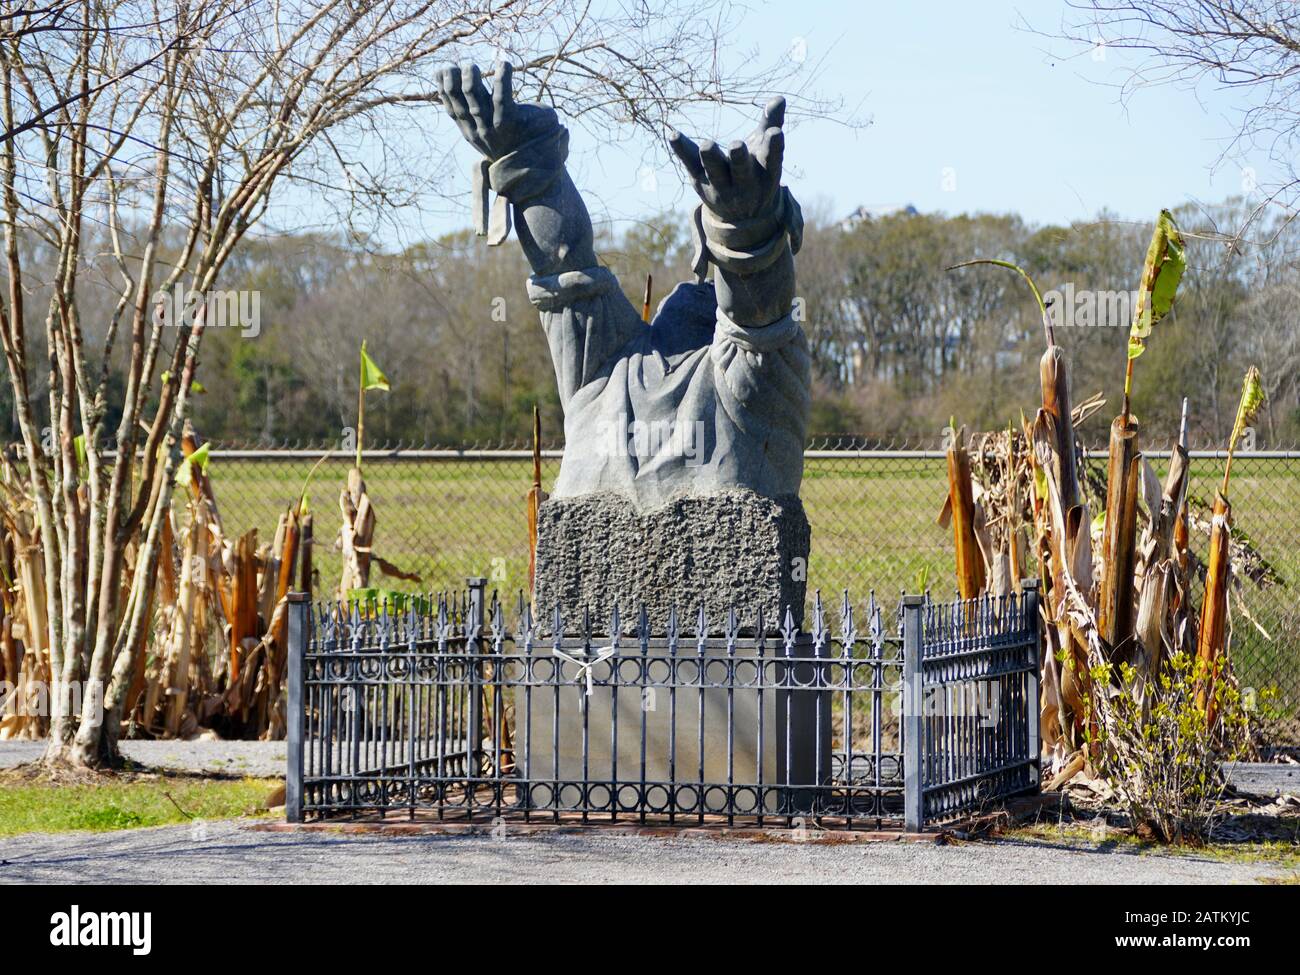 Edgard, Louisiana, U.S.A - February 2, 2020 - A Monument near Whitney Plantation Stock Photo